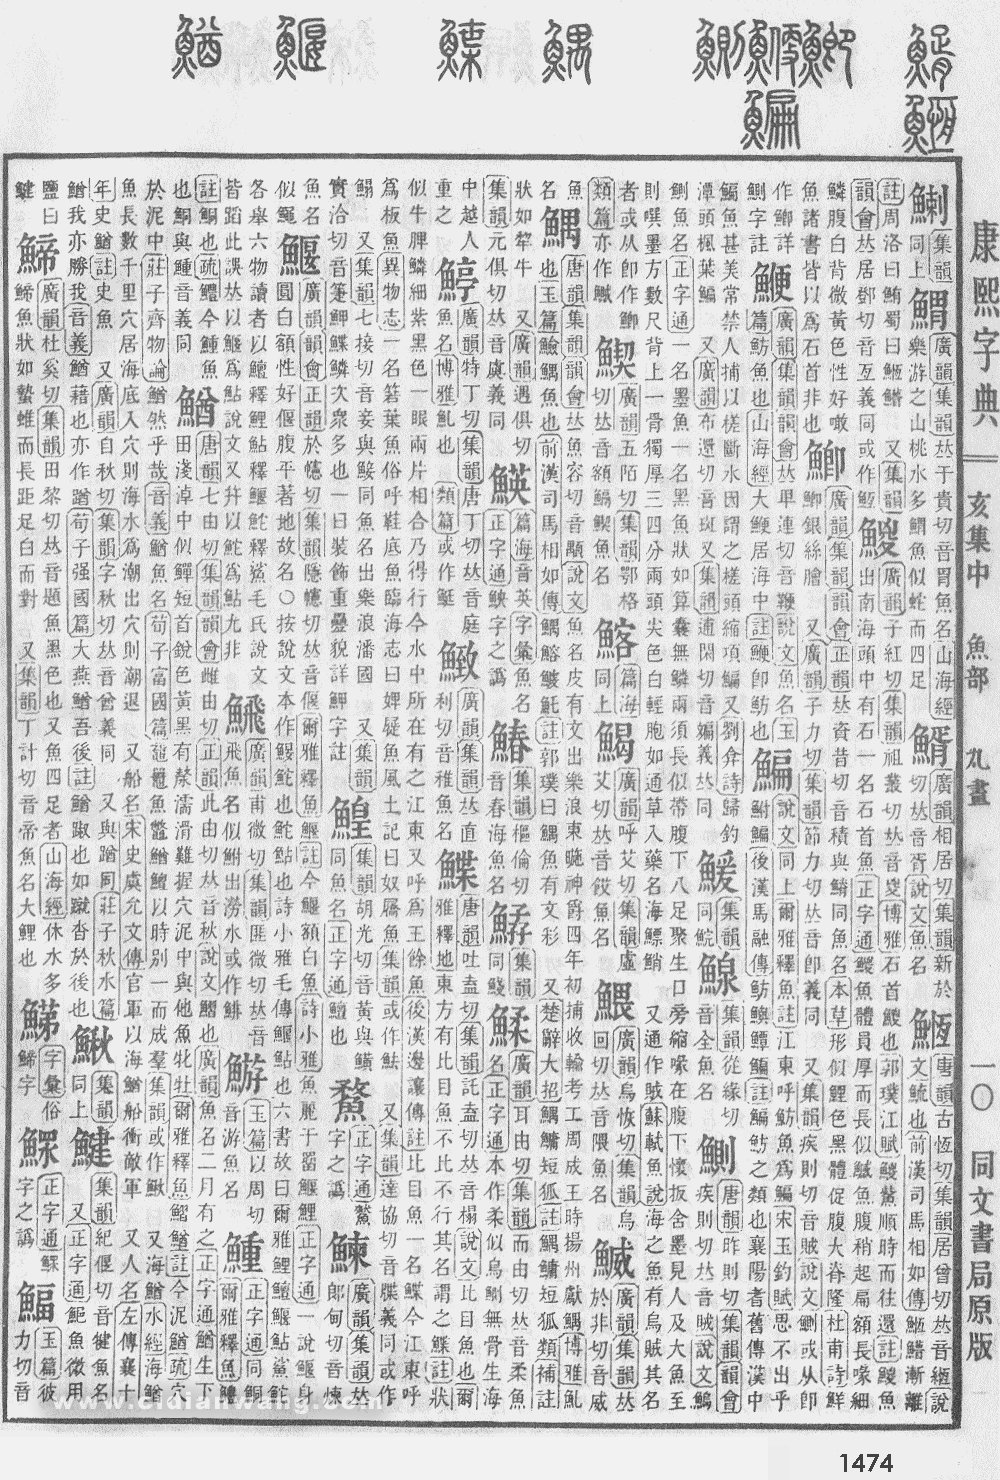 康熙字典掃描版第1474頁